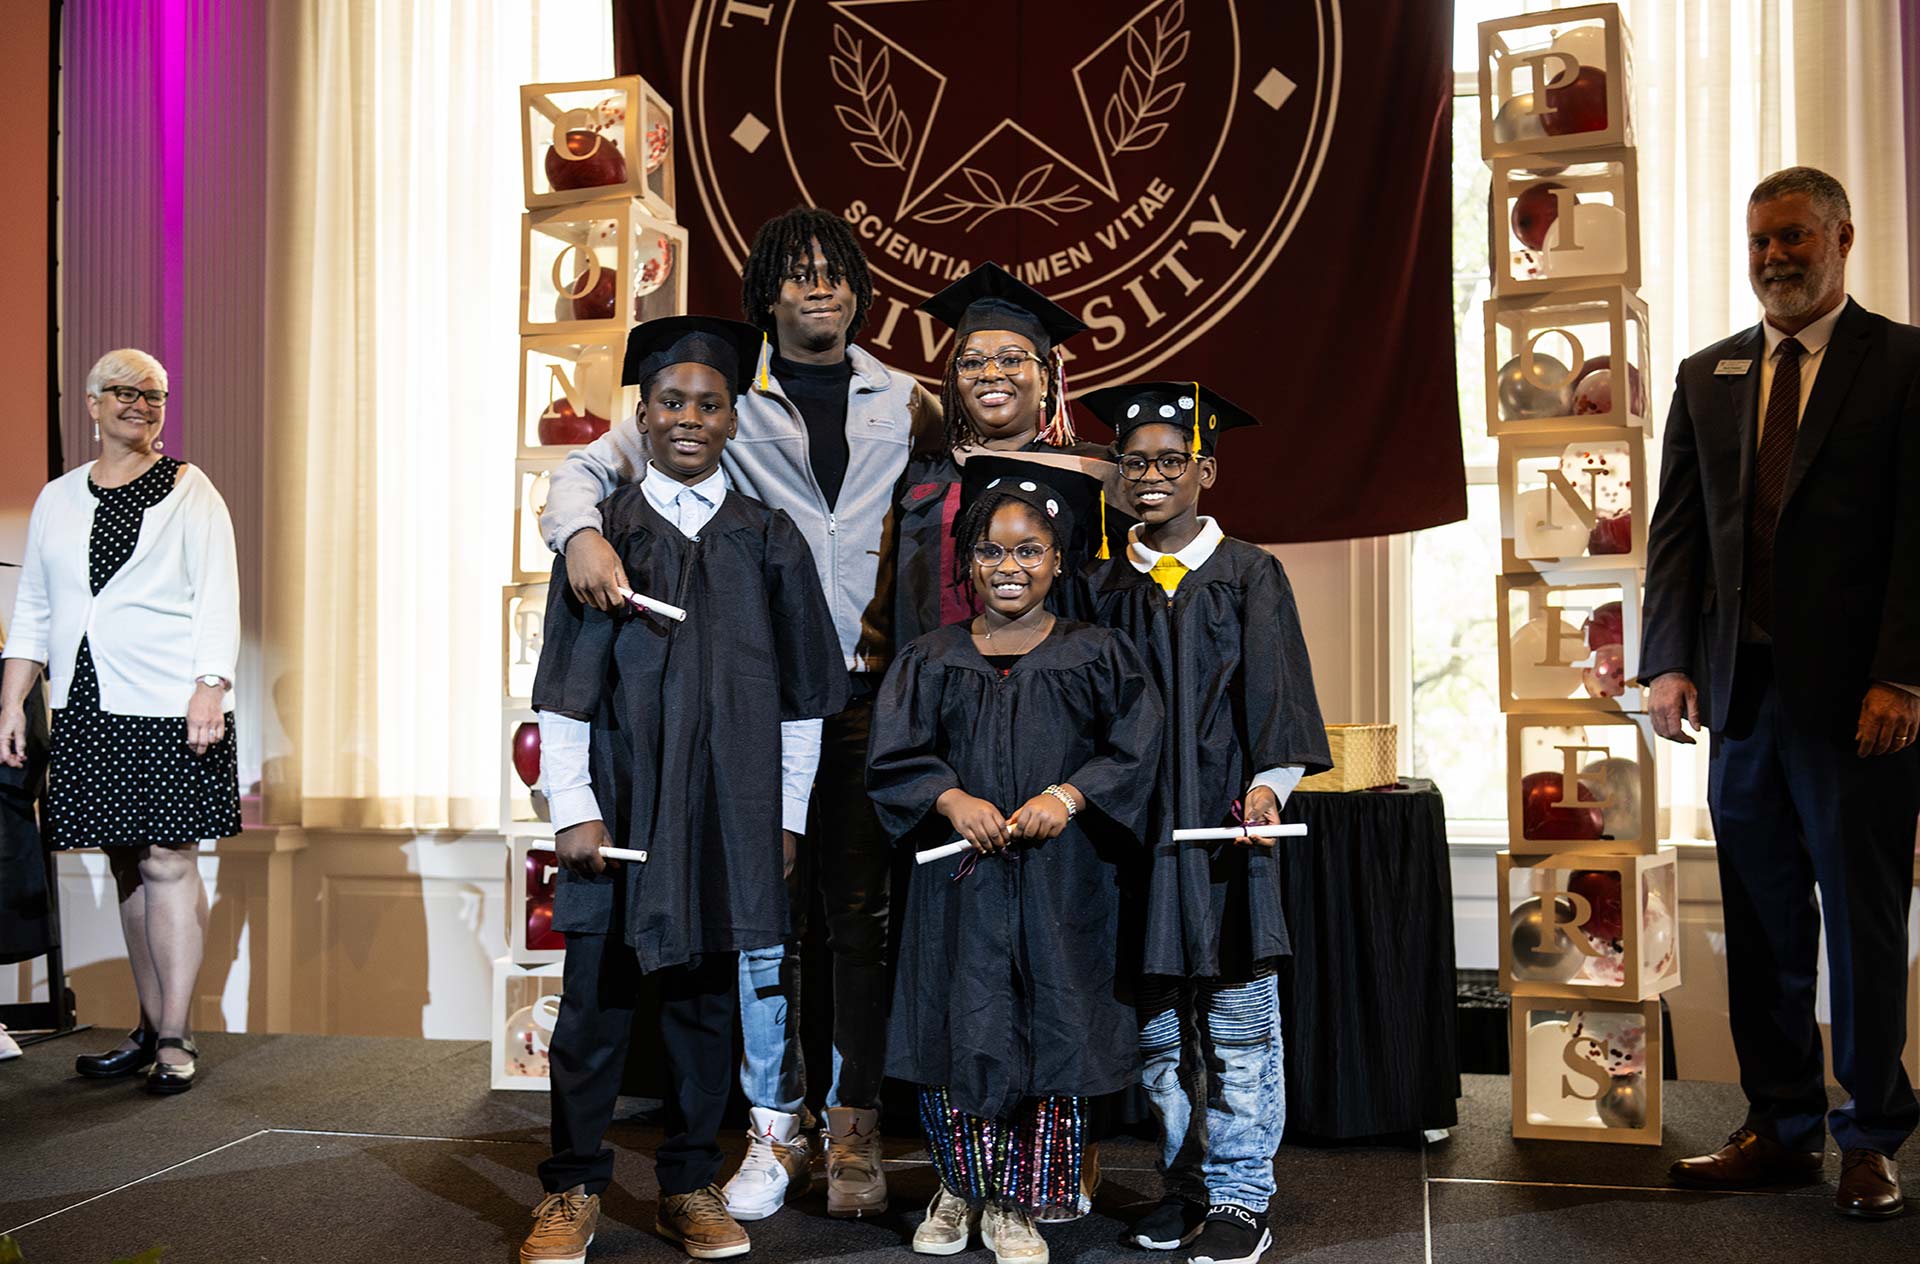 Family Graduation